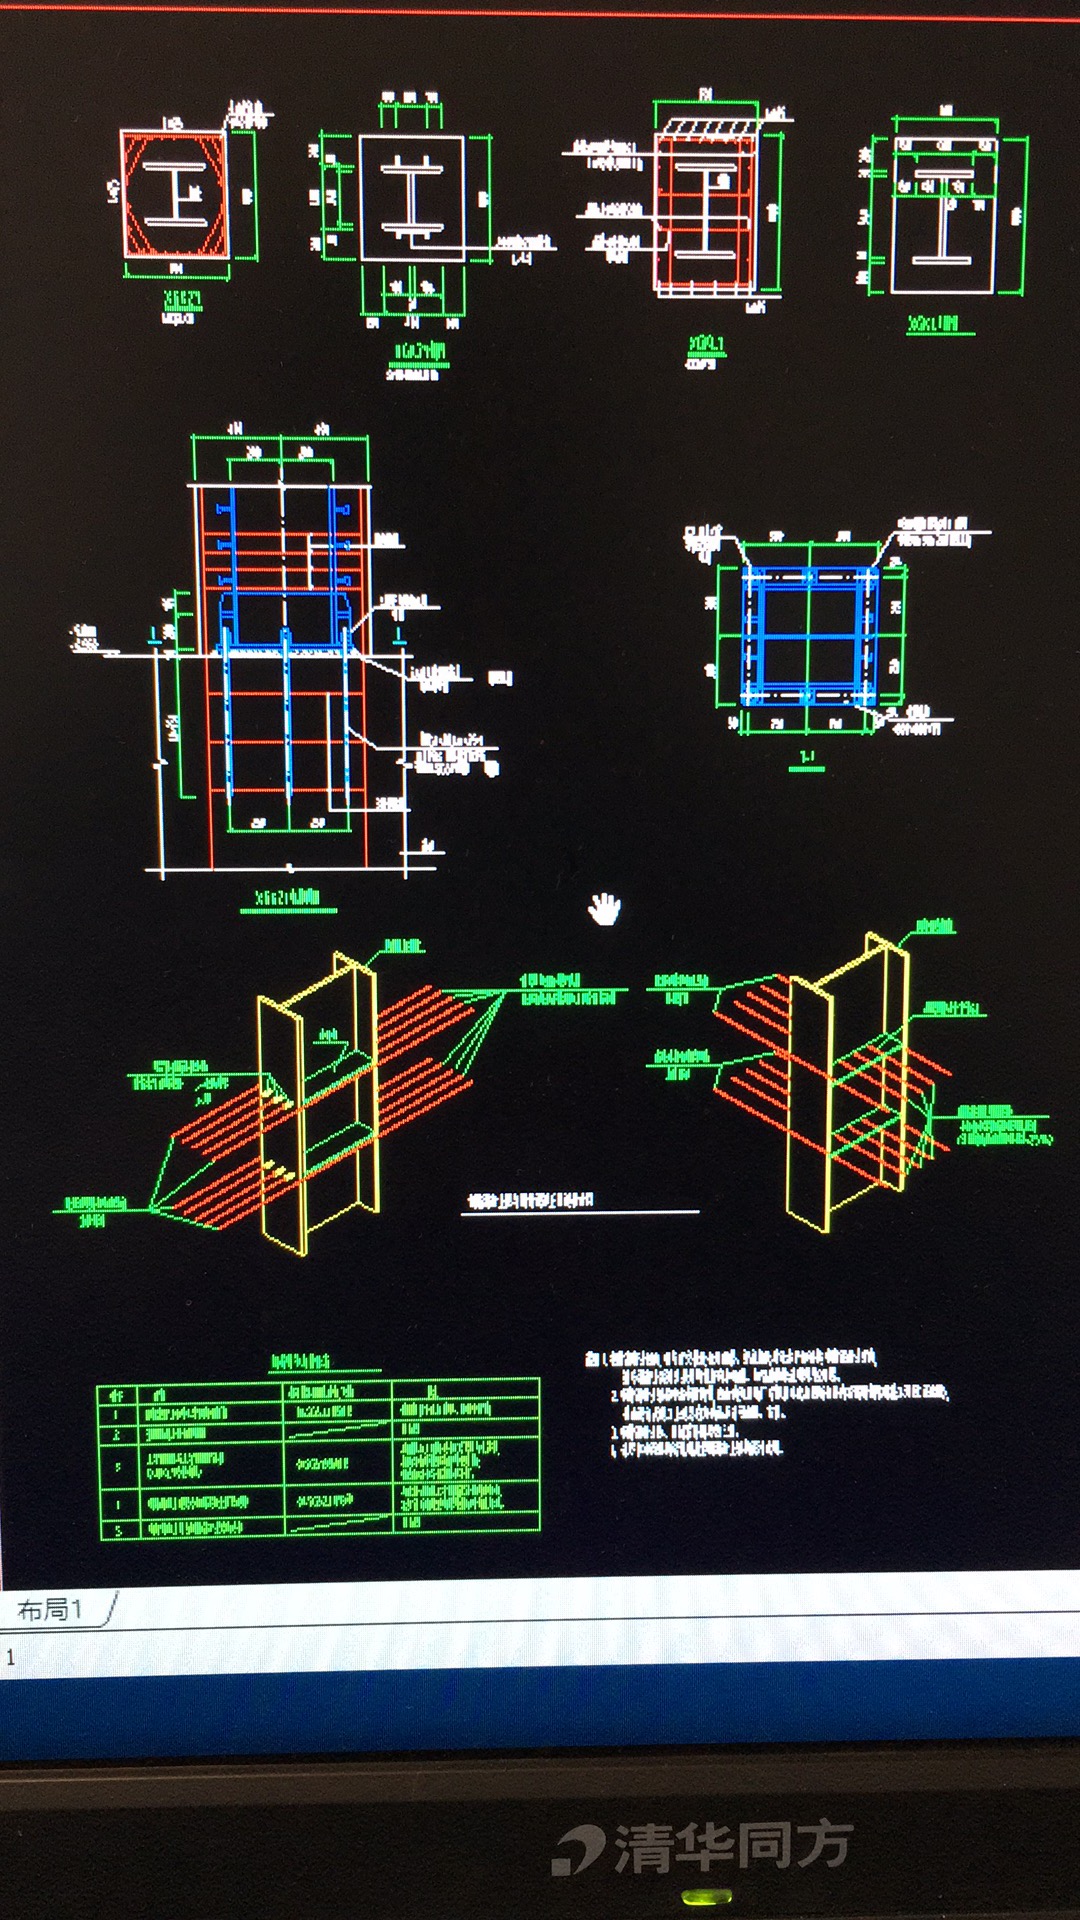 土建算量gtj混凝土框架梁,柱中含型钢的如何计算钢筋量的